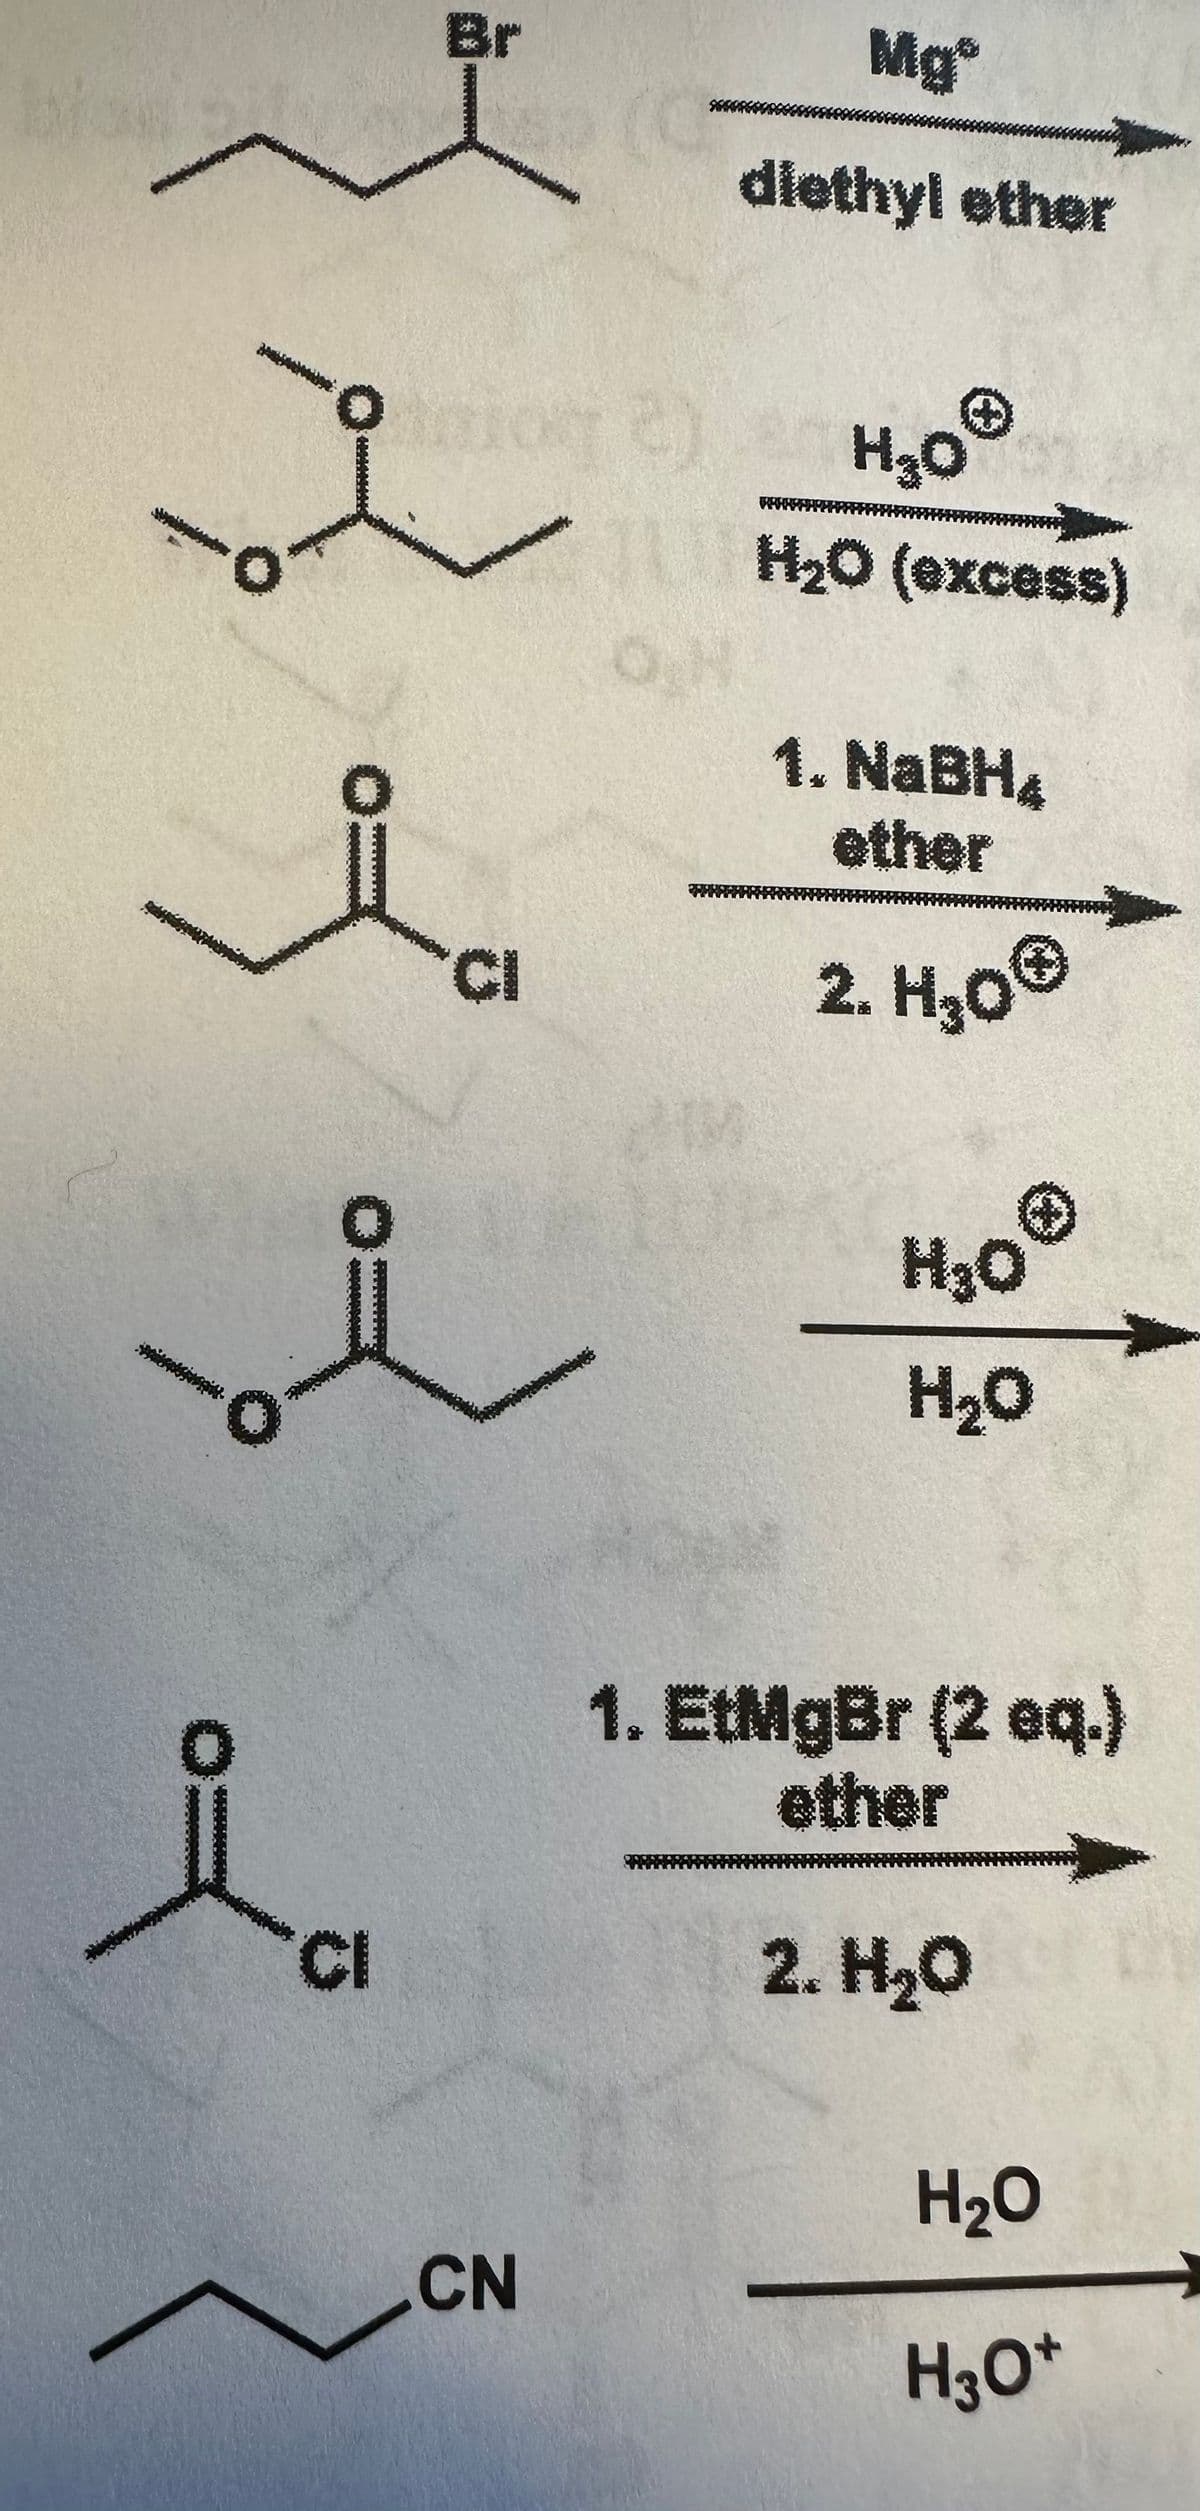 BI
I
pinion
CI
CI
CN
JU
N
Mg
diethyl ether
H₂O
H₂0 (excess)
1. NaBH4
2. H₂0Ⓒ
H₂O
H₂O
1. EtMgBr (2 eq.)
ether
2. H₂O
H₂O
H3O+